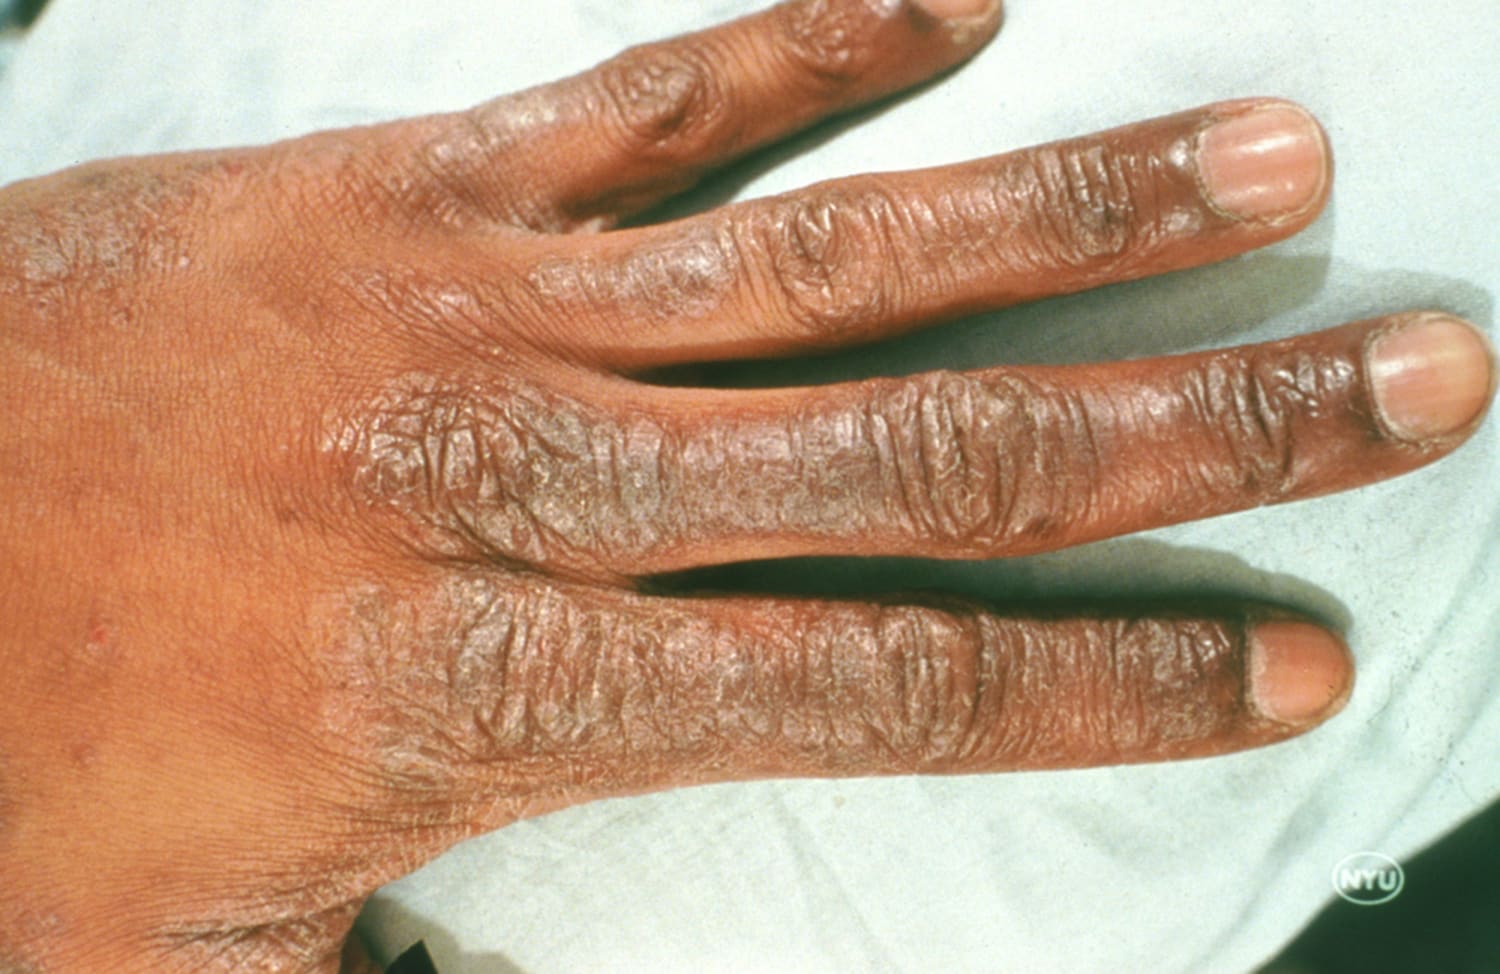 contact dermatitis fingers